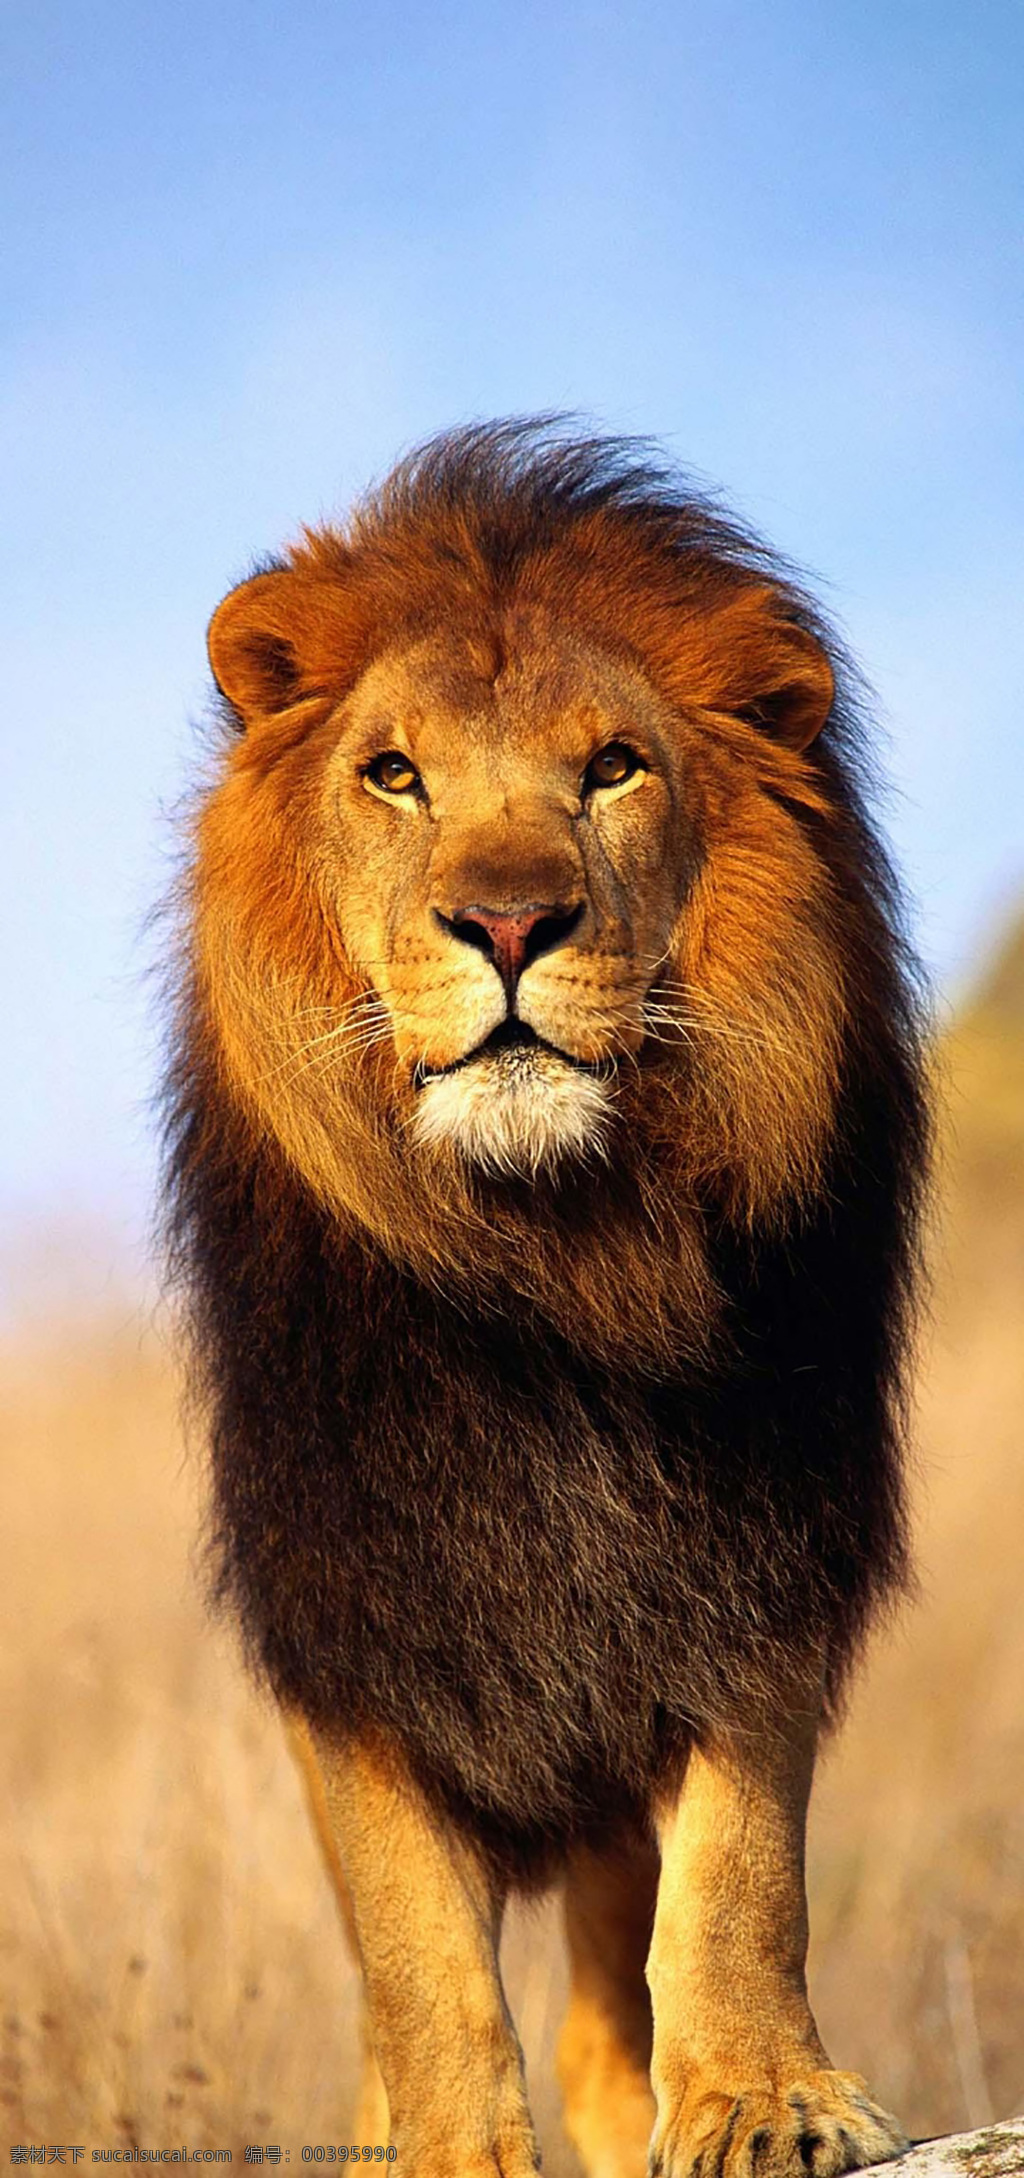 雄狮 非洲狮 非洲 草原 狮子王 野性 野生动物 动物 猫科 犬科 生物世界